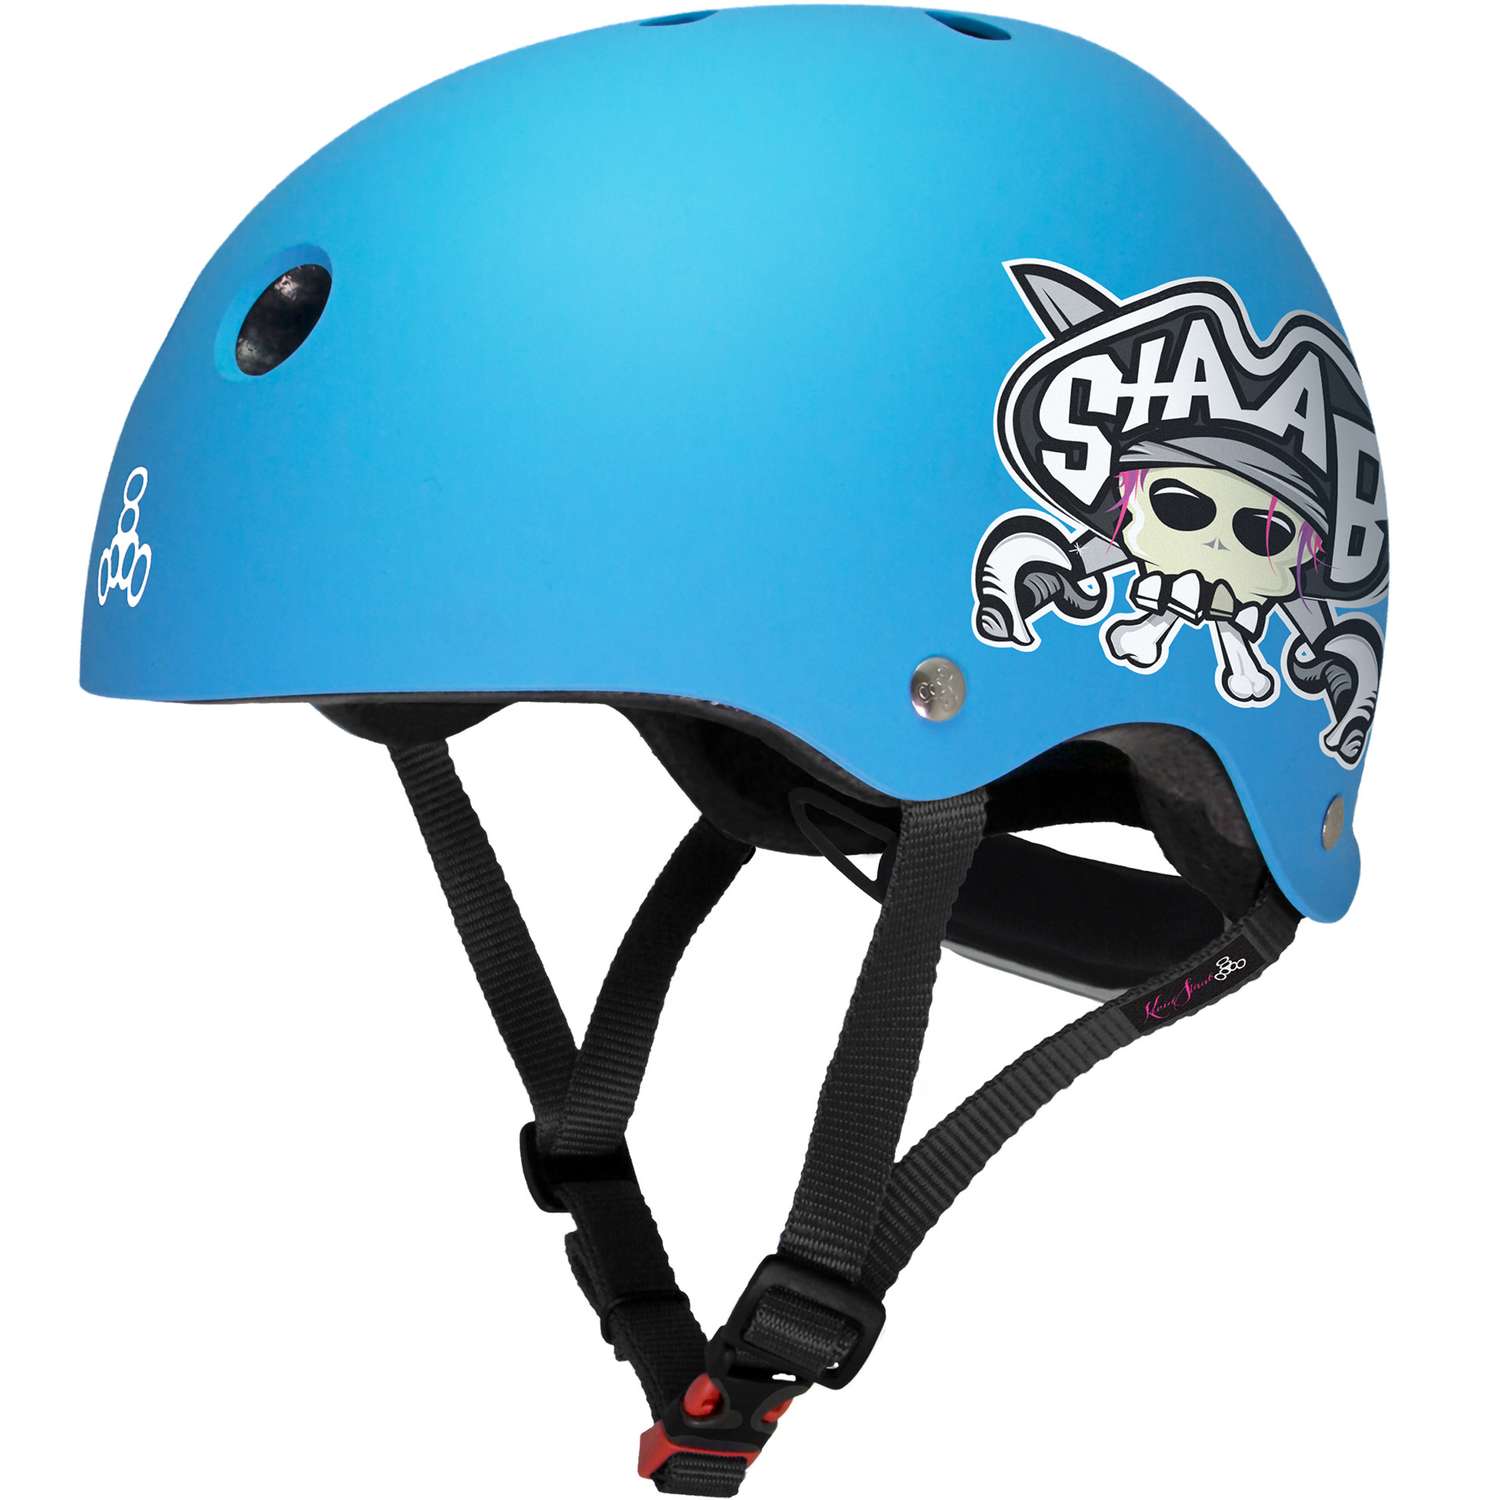 Шлем защитный спортивный Triple Eight Lil 8 Staab Neon Blue (синий) / размер М 5+ / регулировка размера 46-52 см. / для детей - фото 1